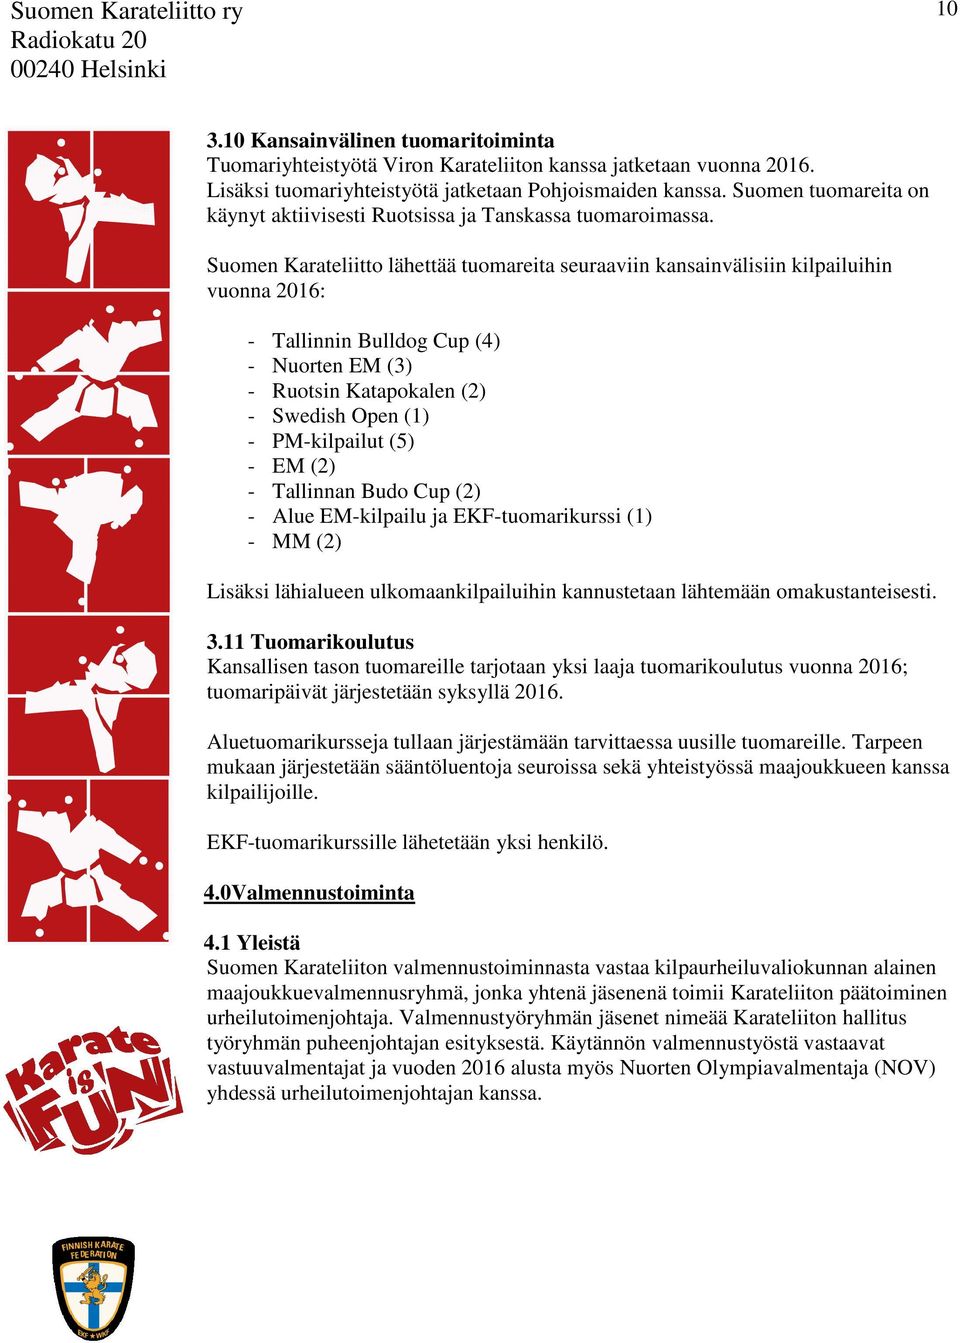 Suomen Karateliitto lähettää tuomareita seuraaviin kansainvälisiin kilpailuihin vuonna 2016: - Tallinnin Bulldog Cup (4) - Nuorten EM (3) - Ruotsin Katapokalen (2) - Swedish Open (1) - PM-kilpailut